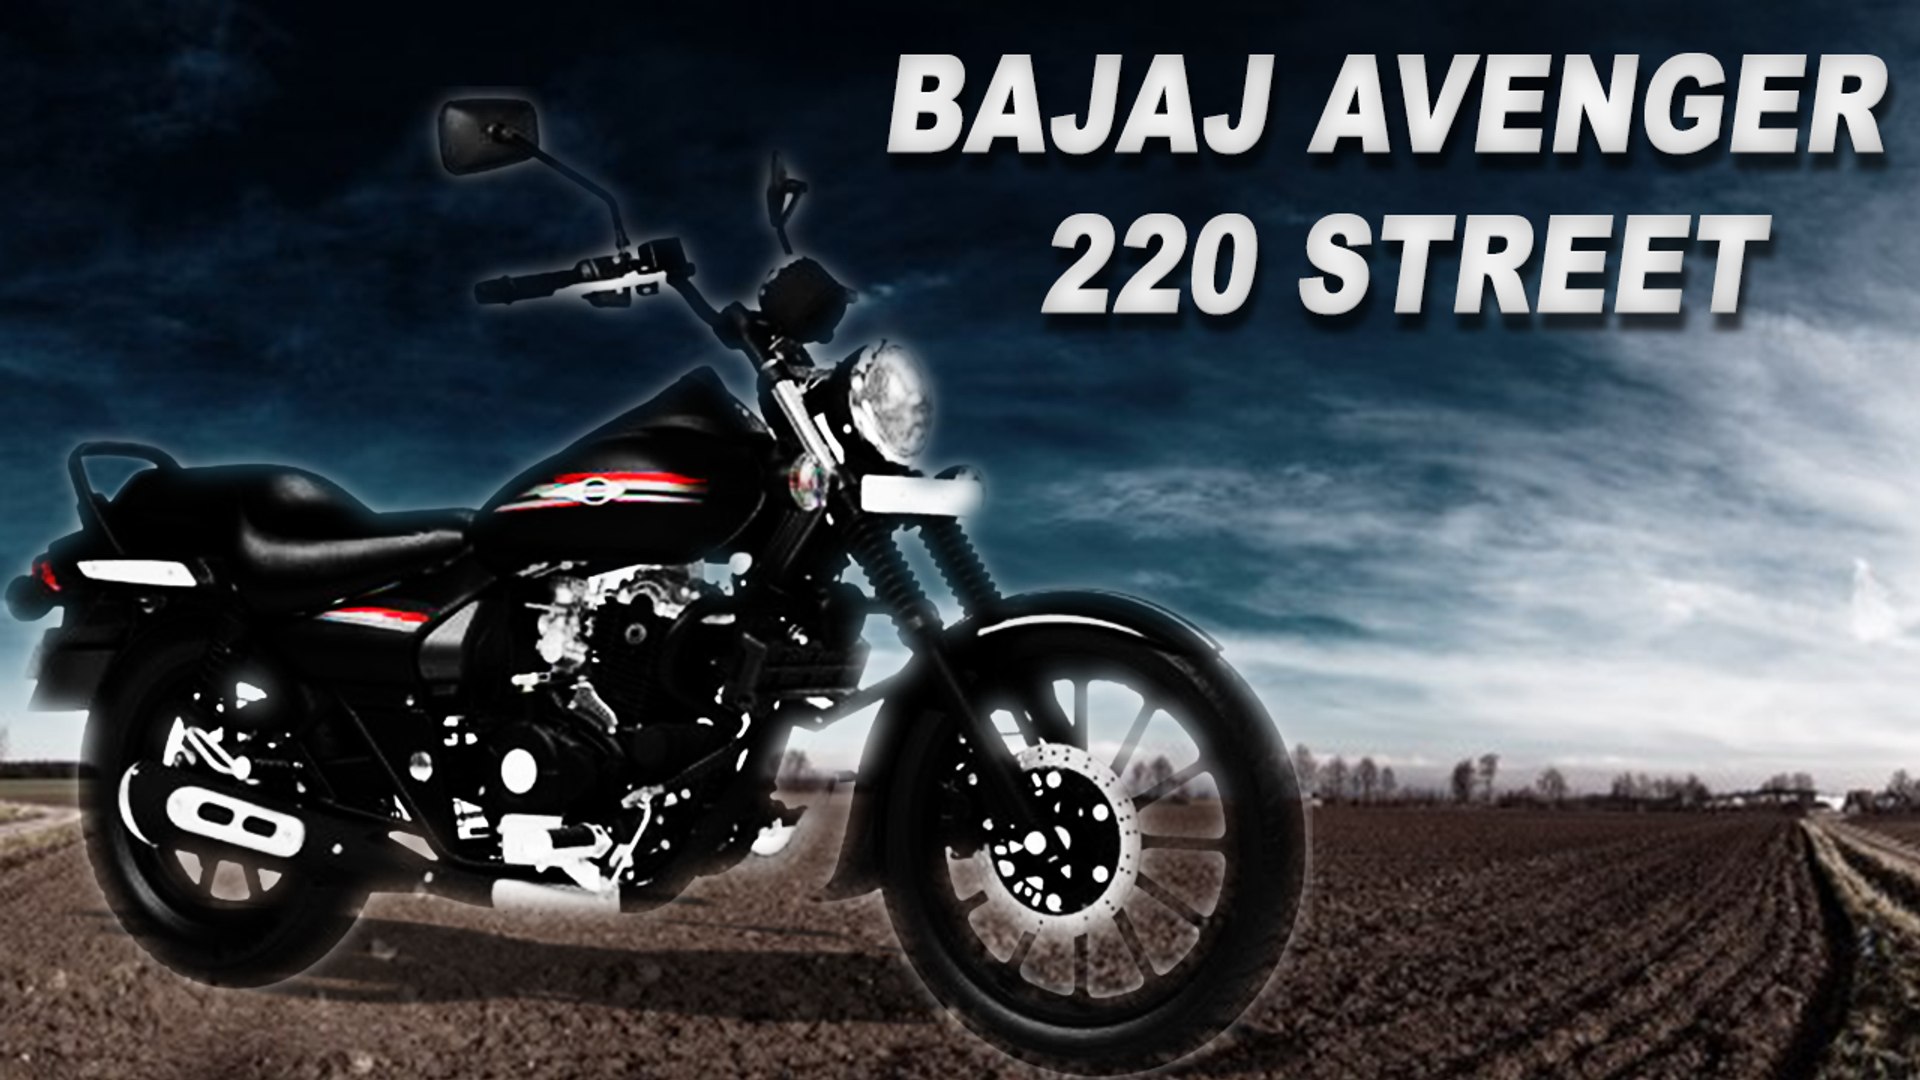 Bajaj Avenger 220 Street | Review | 2015 - video Dailymotion